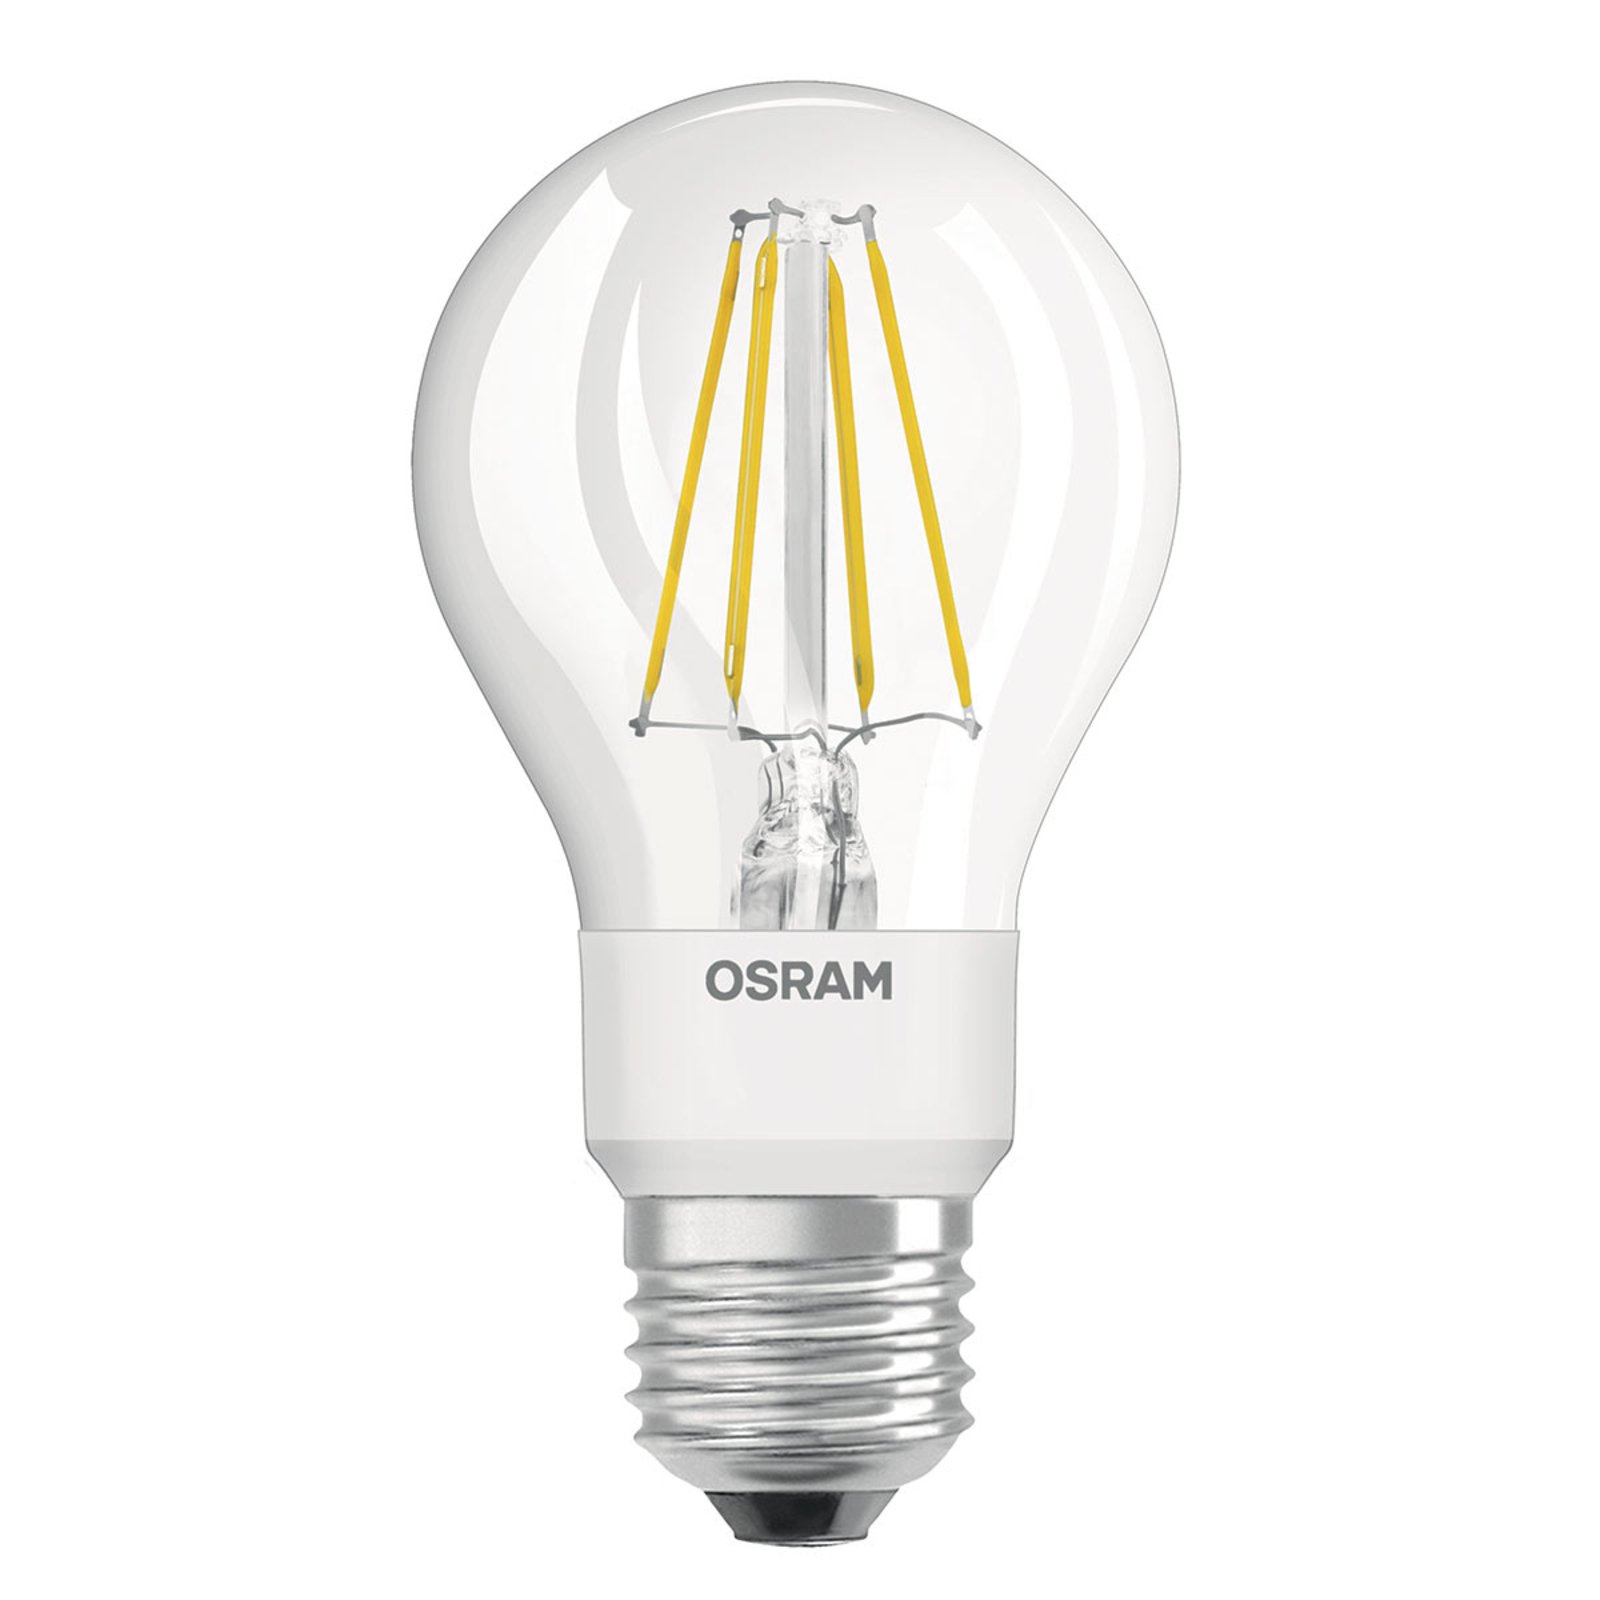 OSRAM LED-lamp 4W Star GLOWdim Hõõgniit läbipaistev